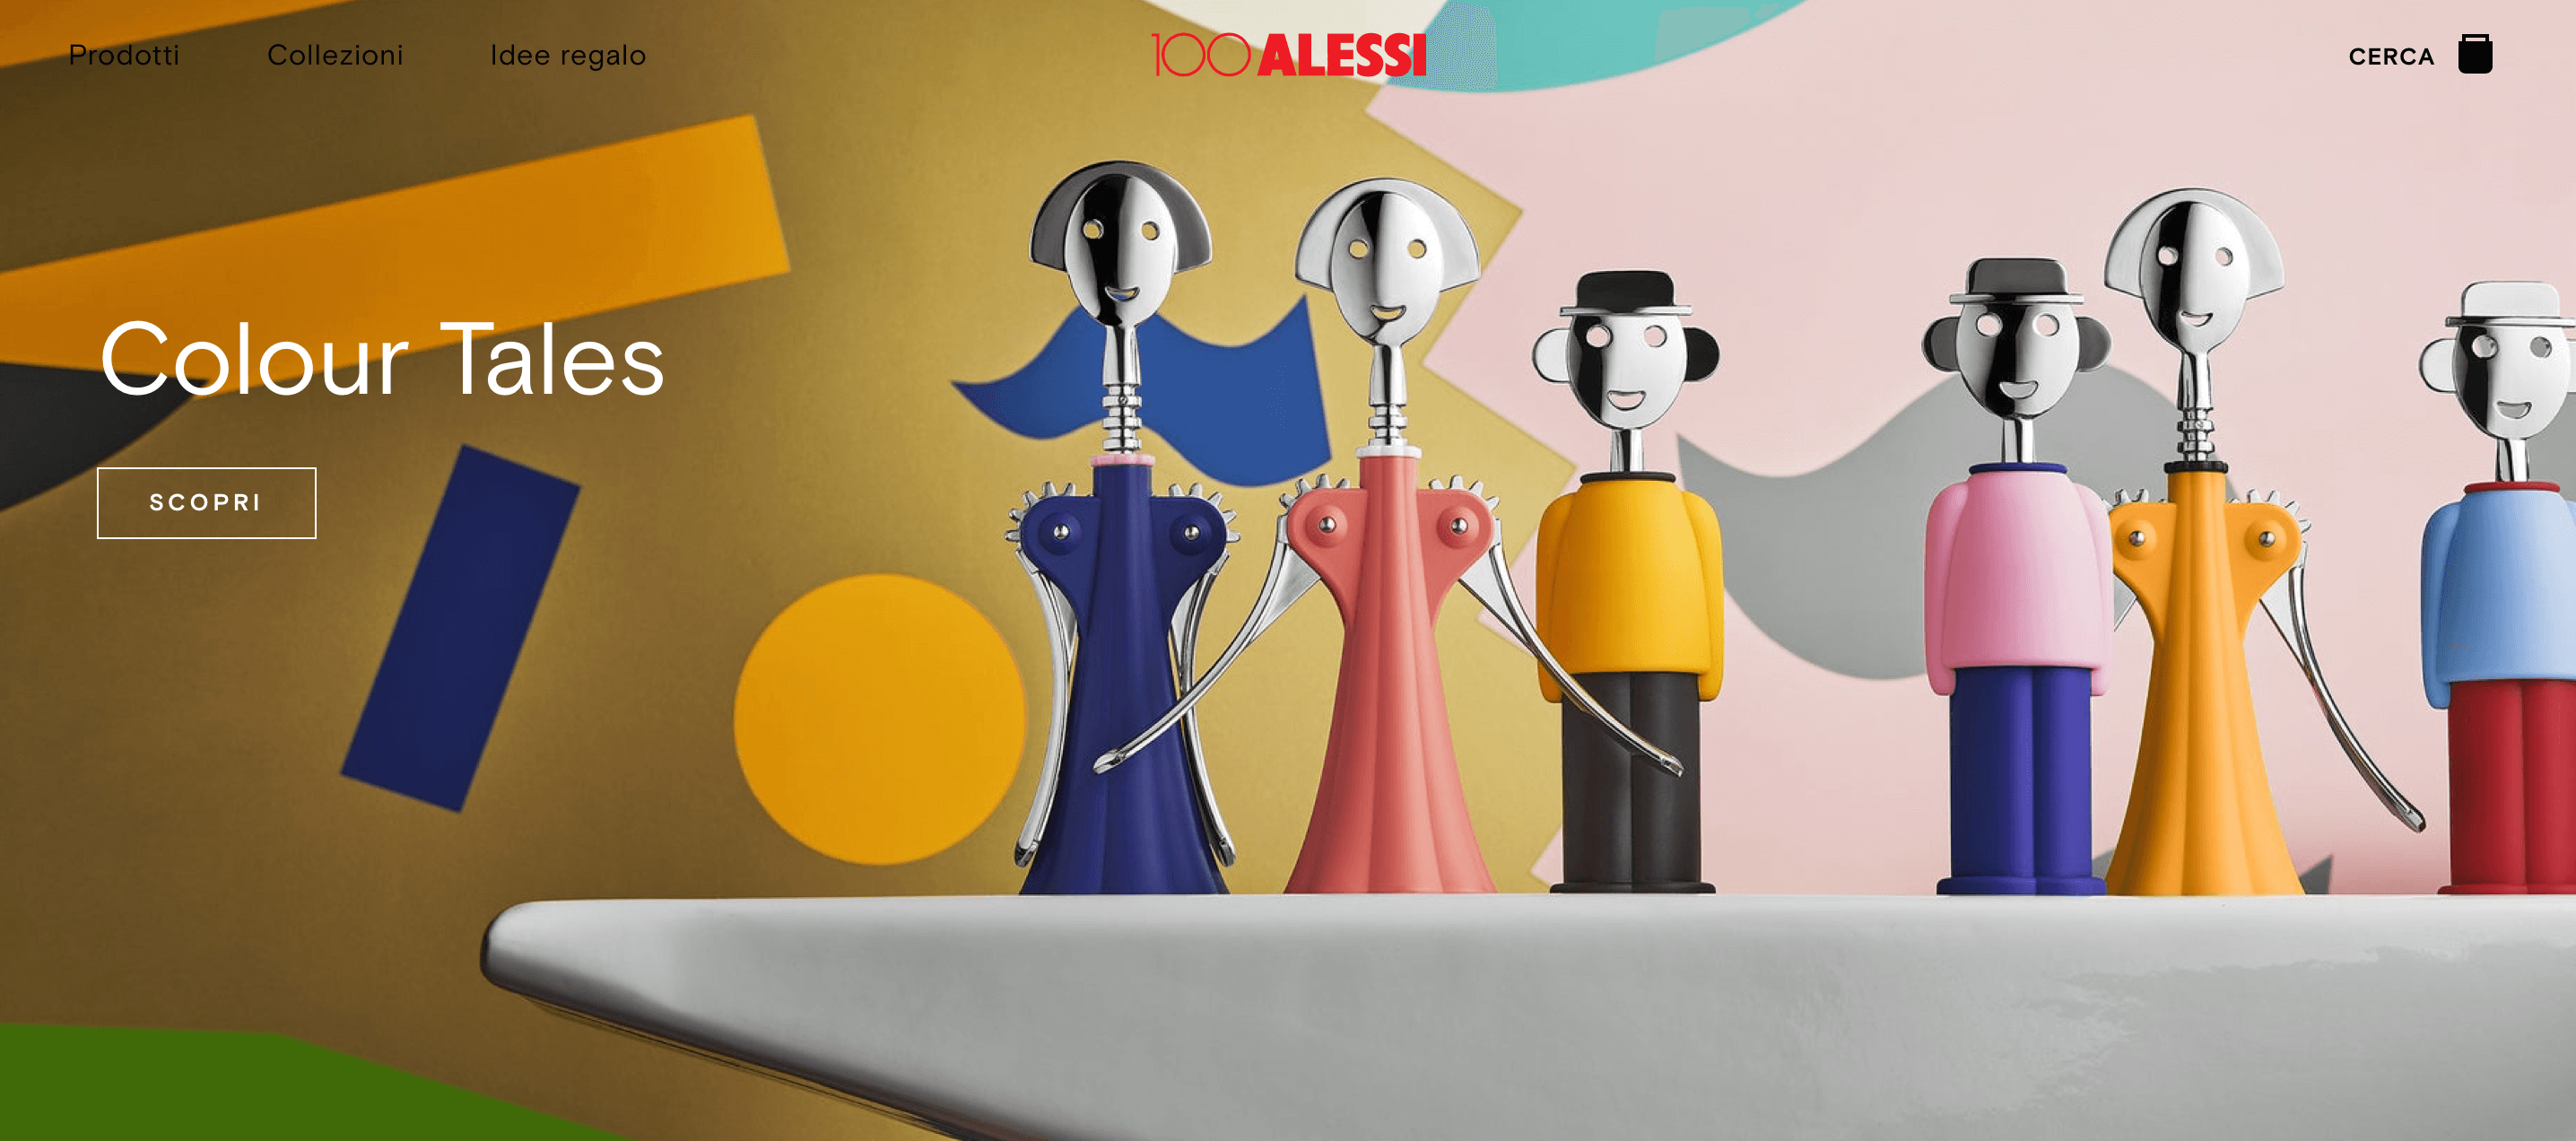 意大利家居设计公司 Alessi 开拓国际市场，两年内营业额有望迈入一亿欧元大关